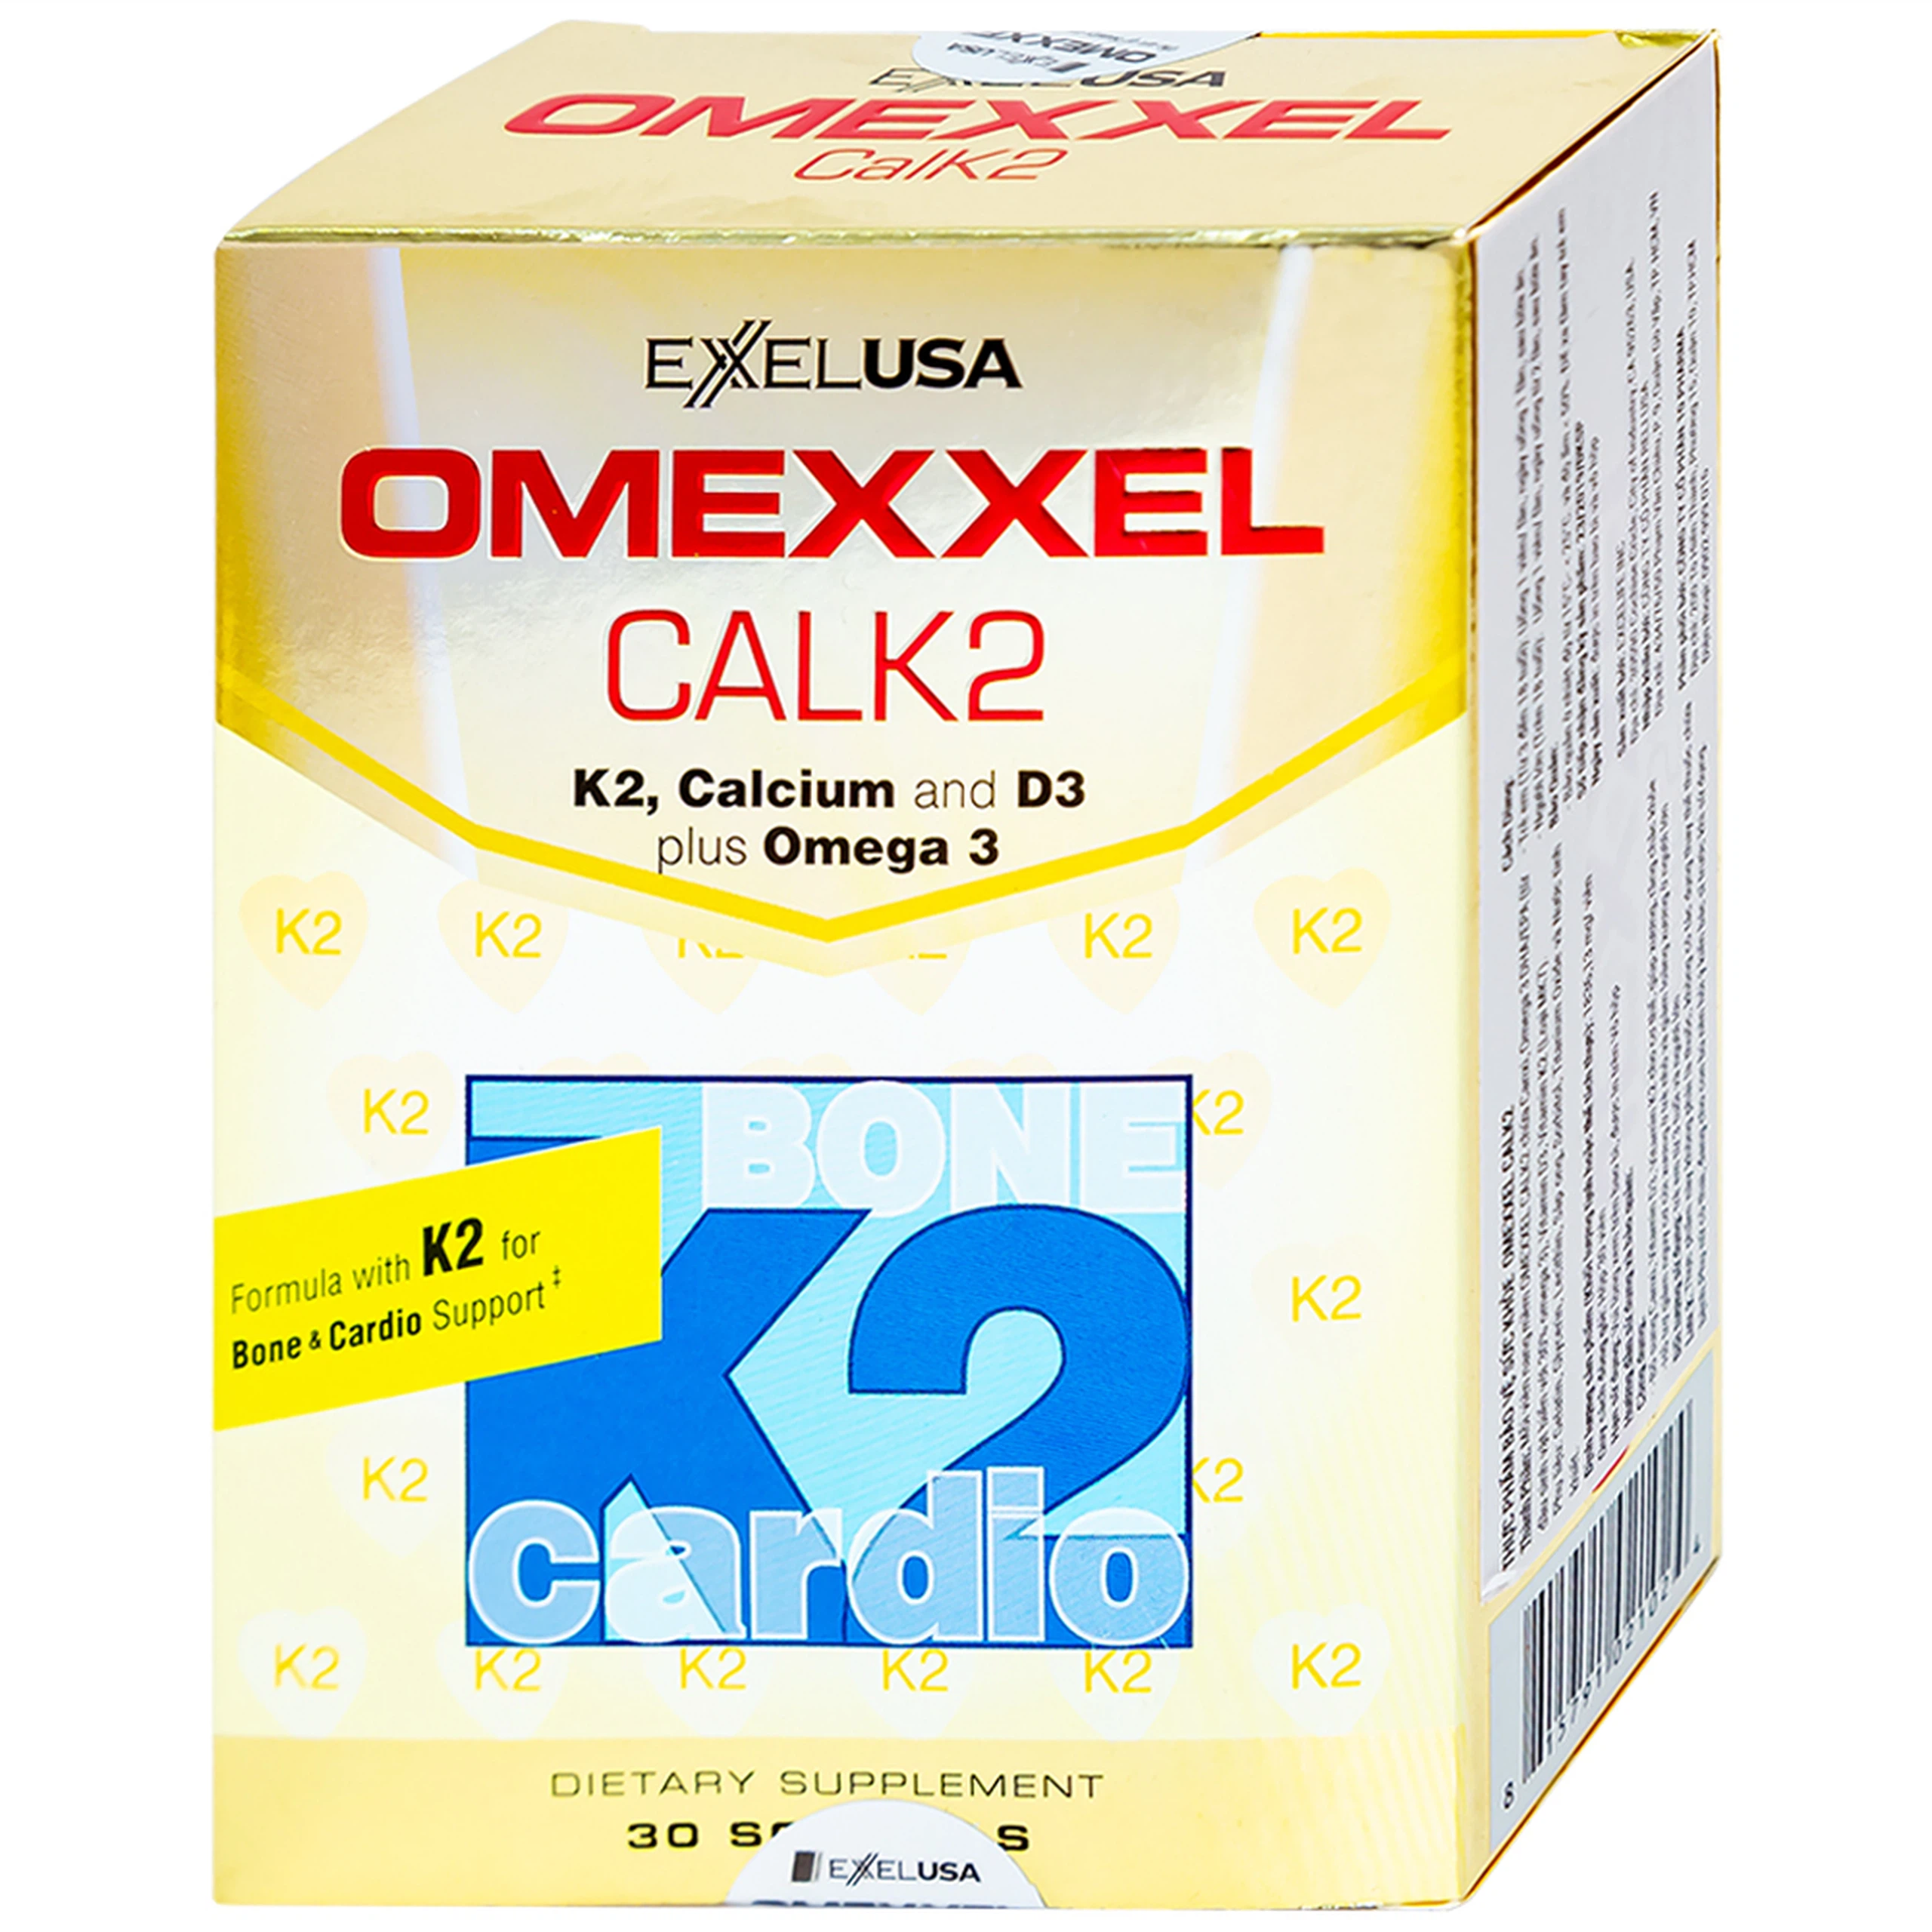 Viên uống Omexxel Calk2 Excelife bổ sung Canxi, Vitamin D3 (3 vỉ x 10 viên)